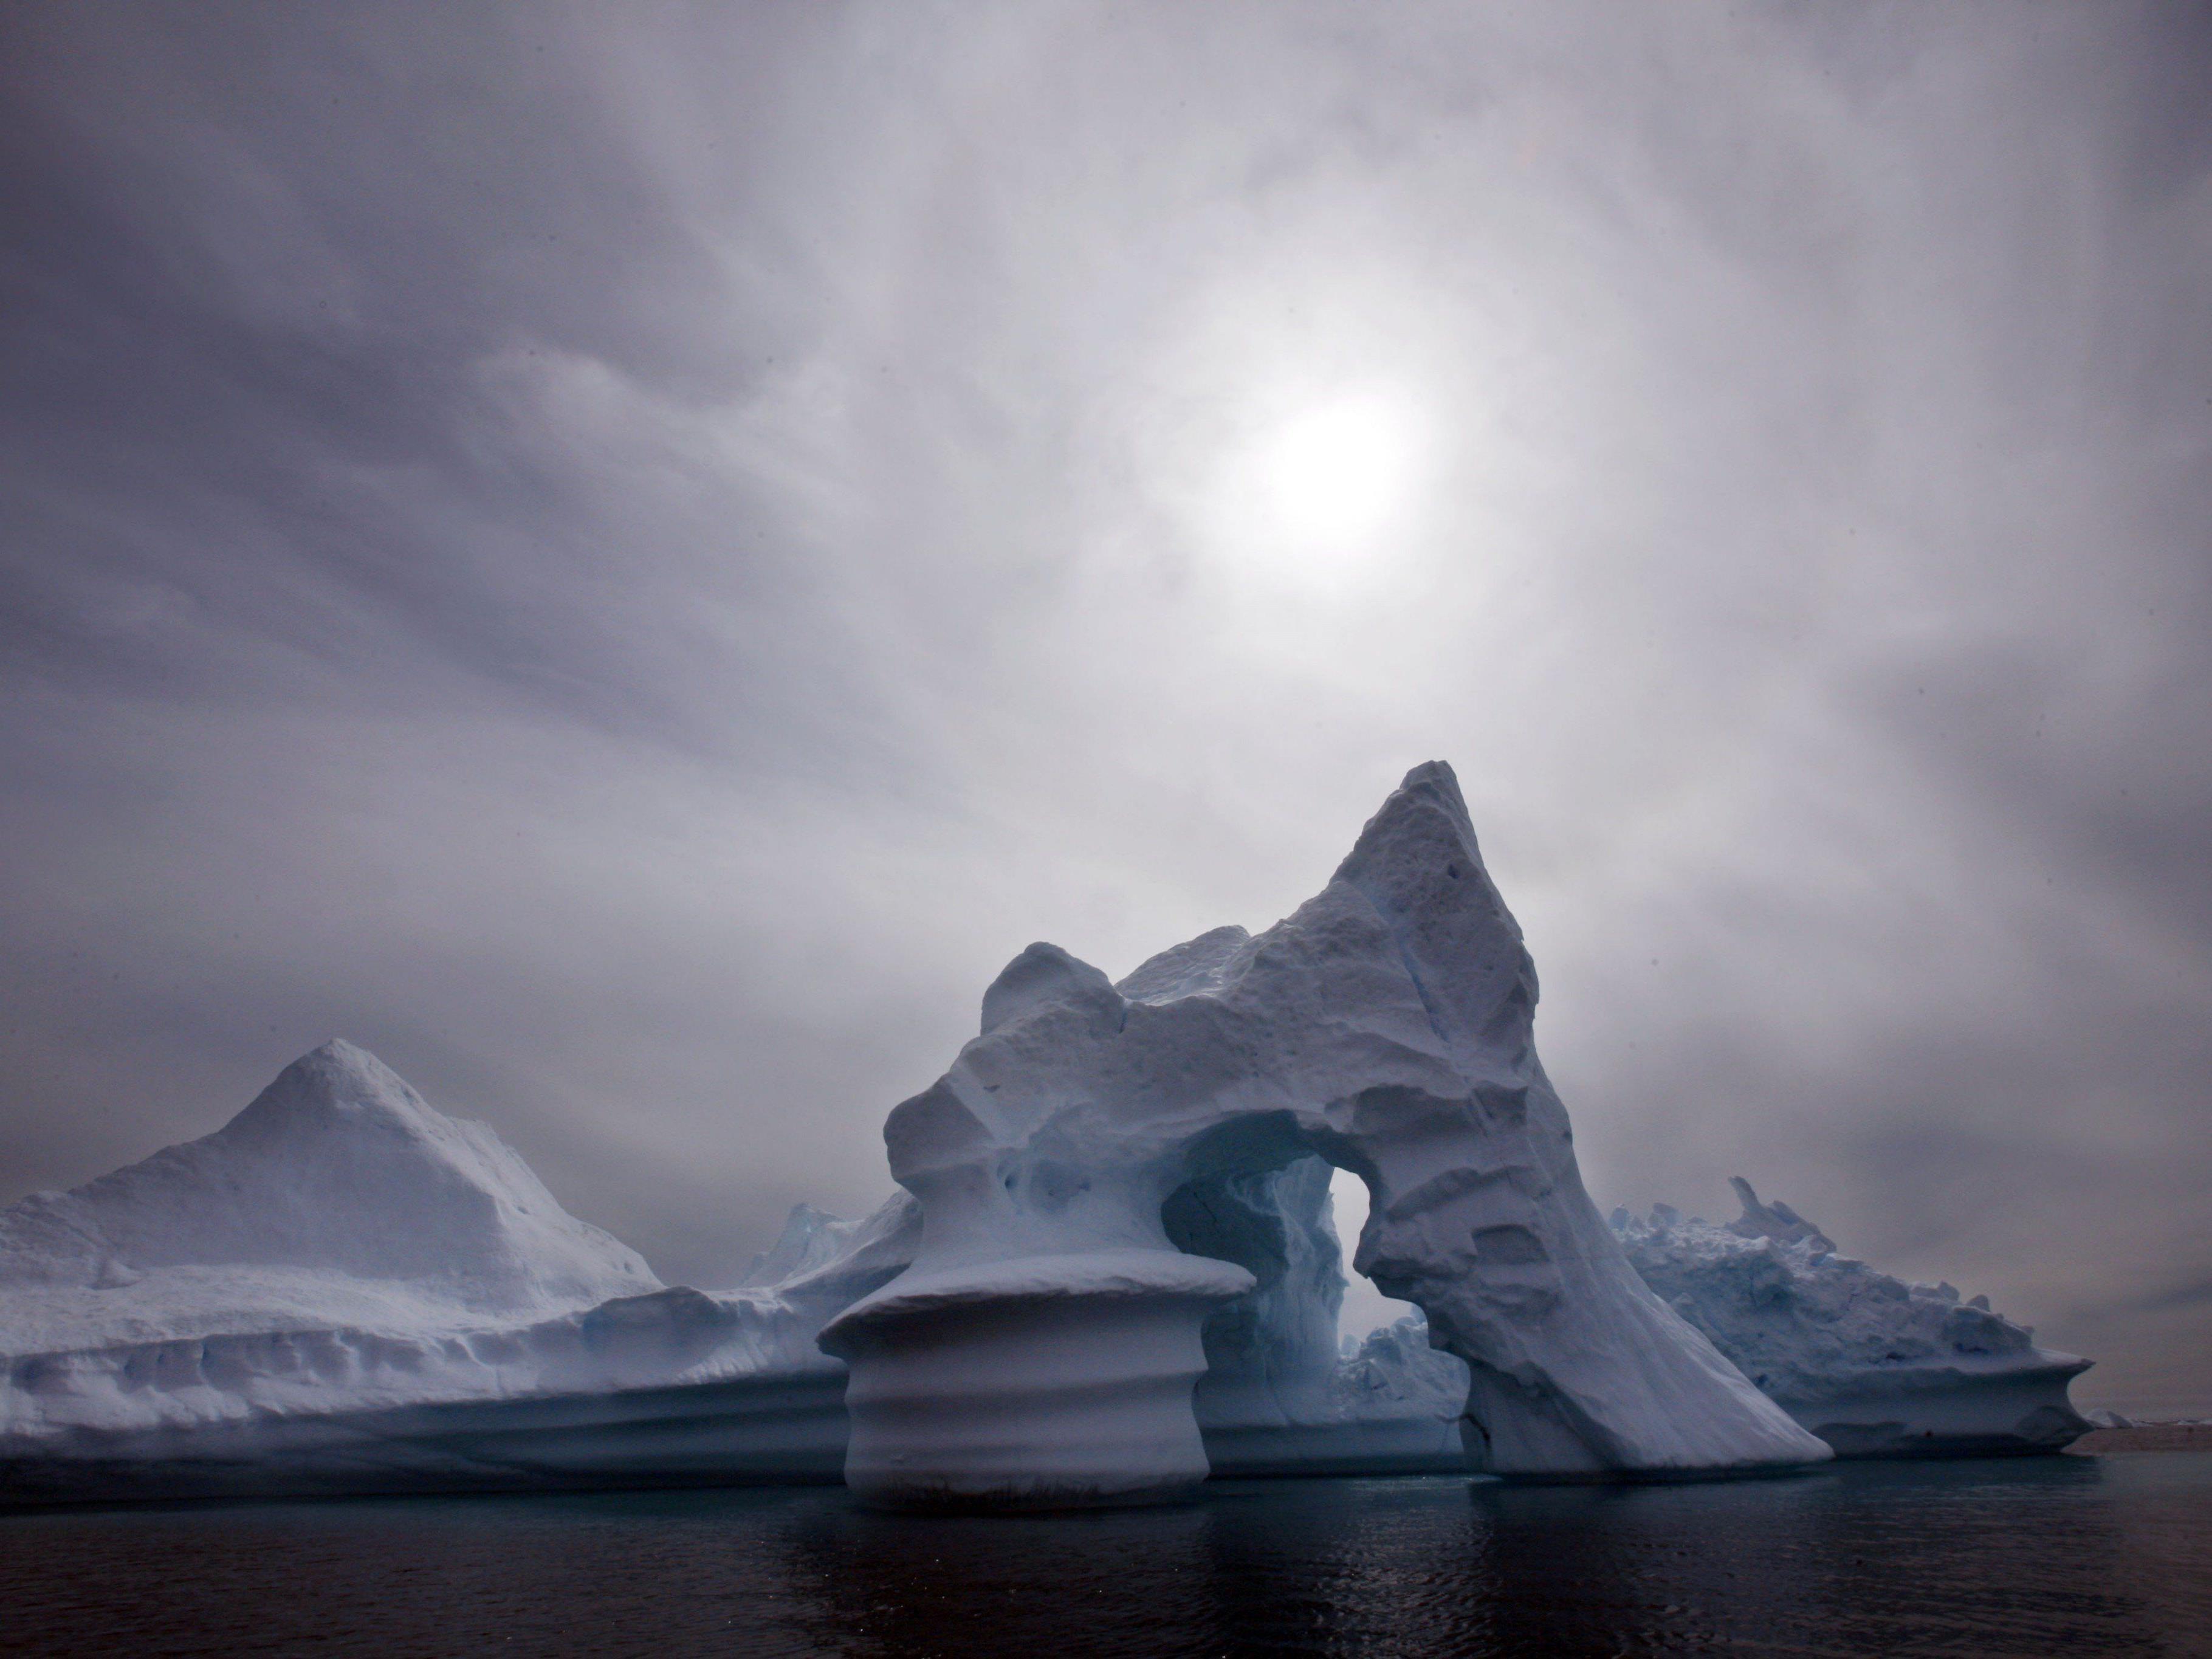 Oberfläche des Grönland-Eisschildes wird durch Schmelzen immer dunkler